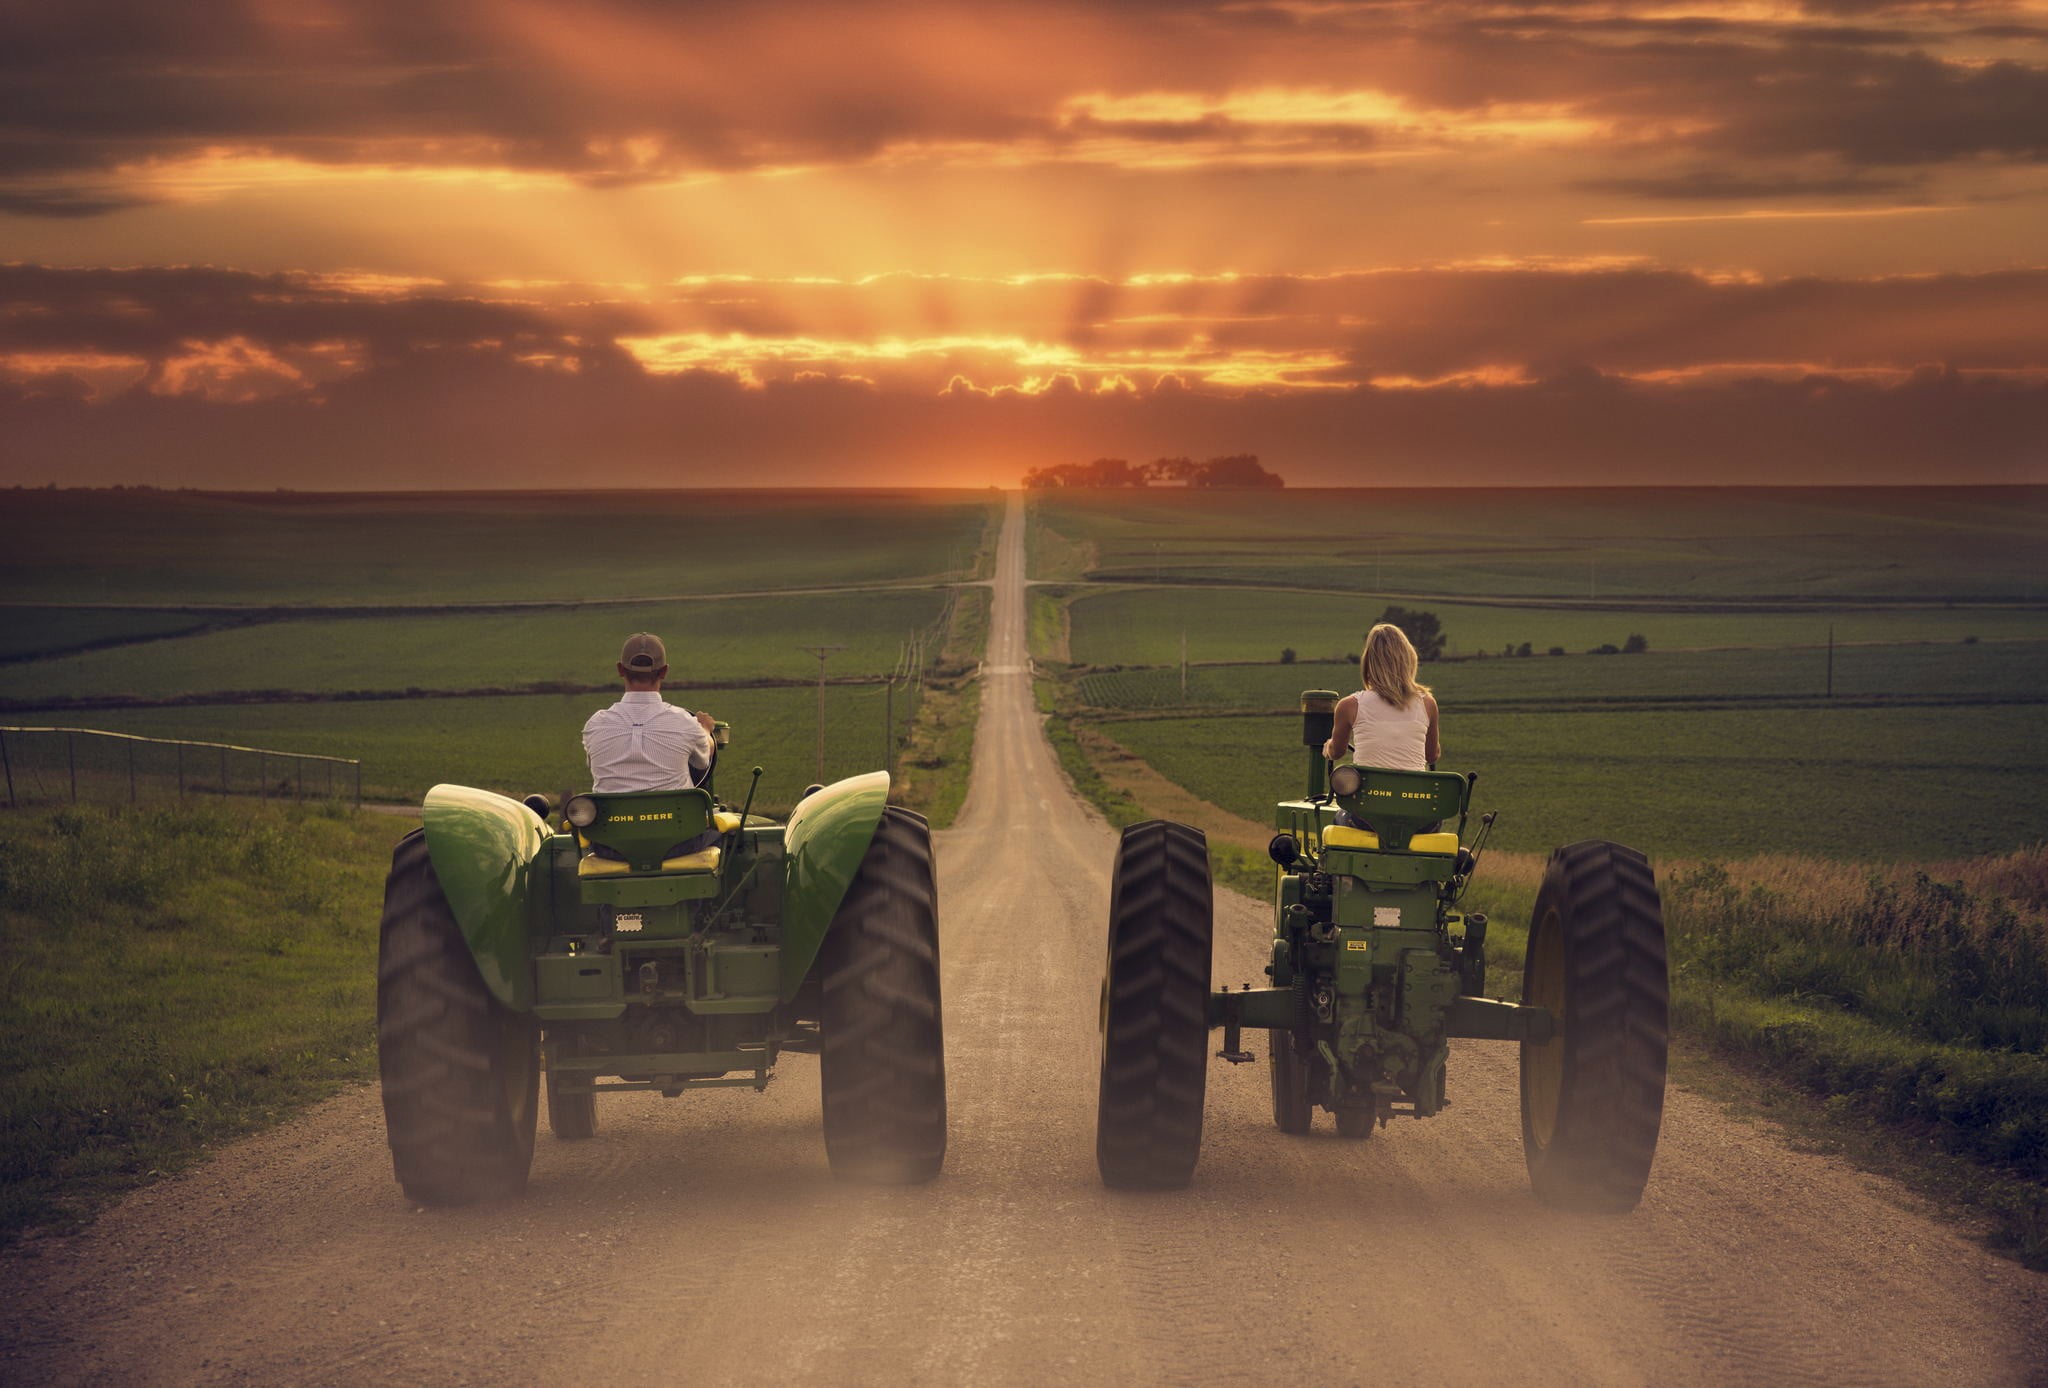 two green John Deere tractors, landscape, field, vehicle, sunset